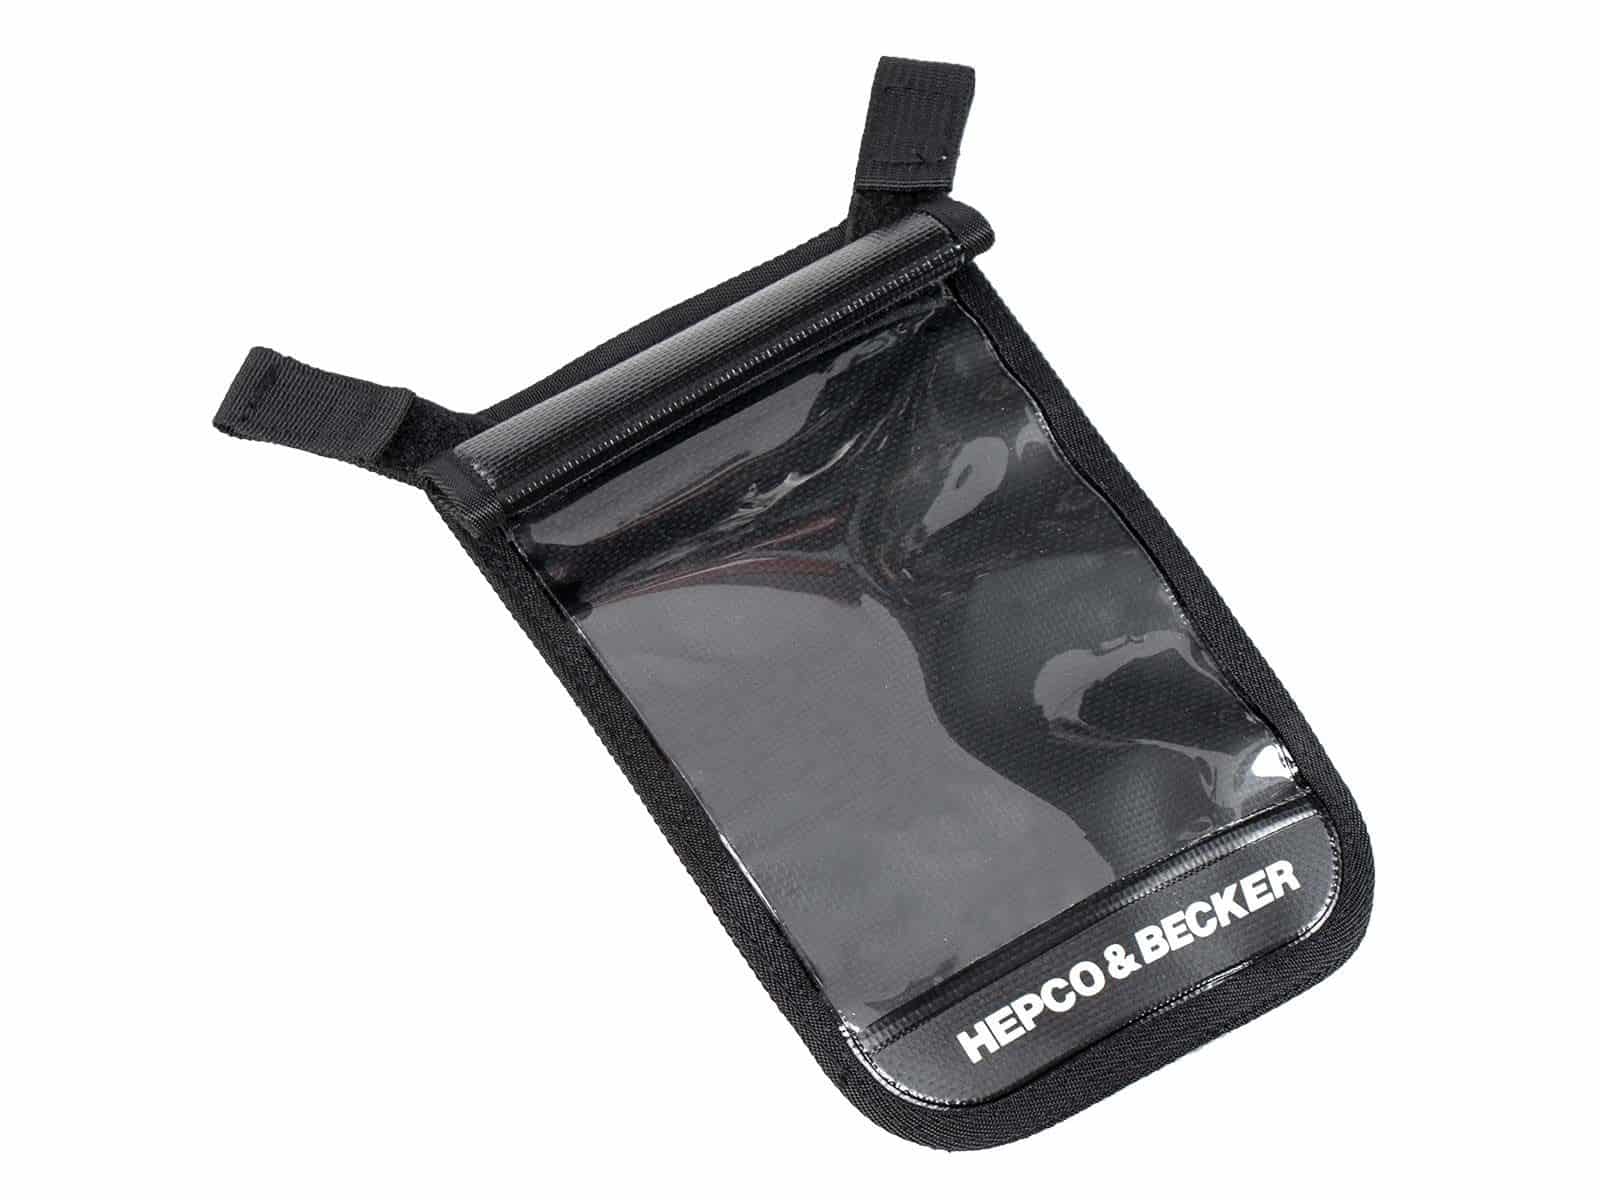 Smartphone-Tasche wasserdicht waterproof smartphone bag black